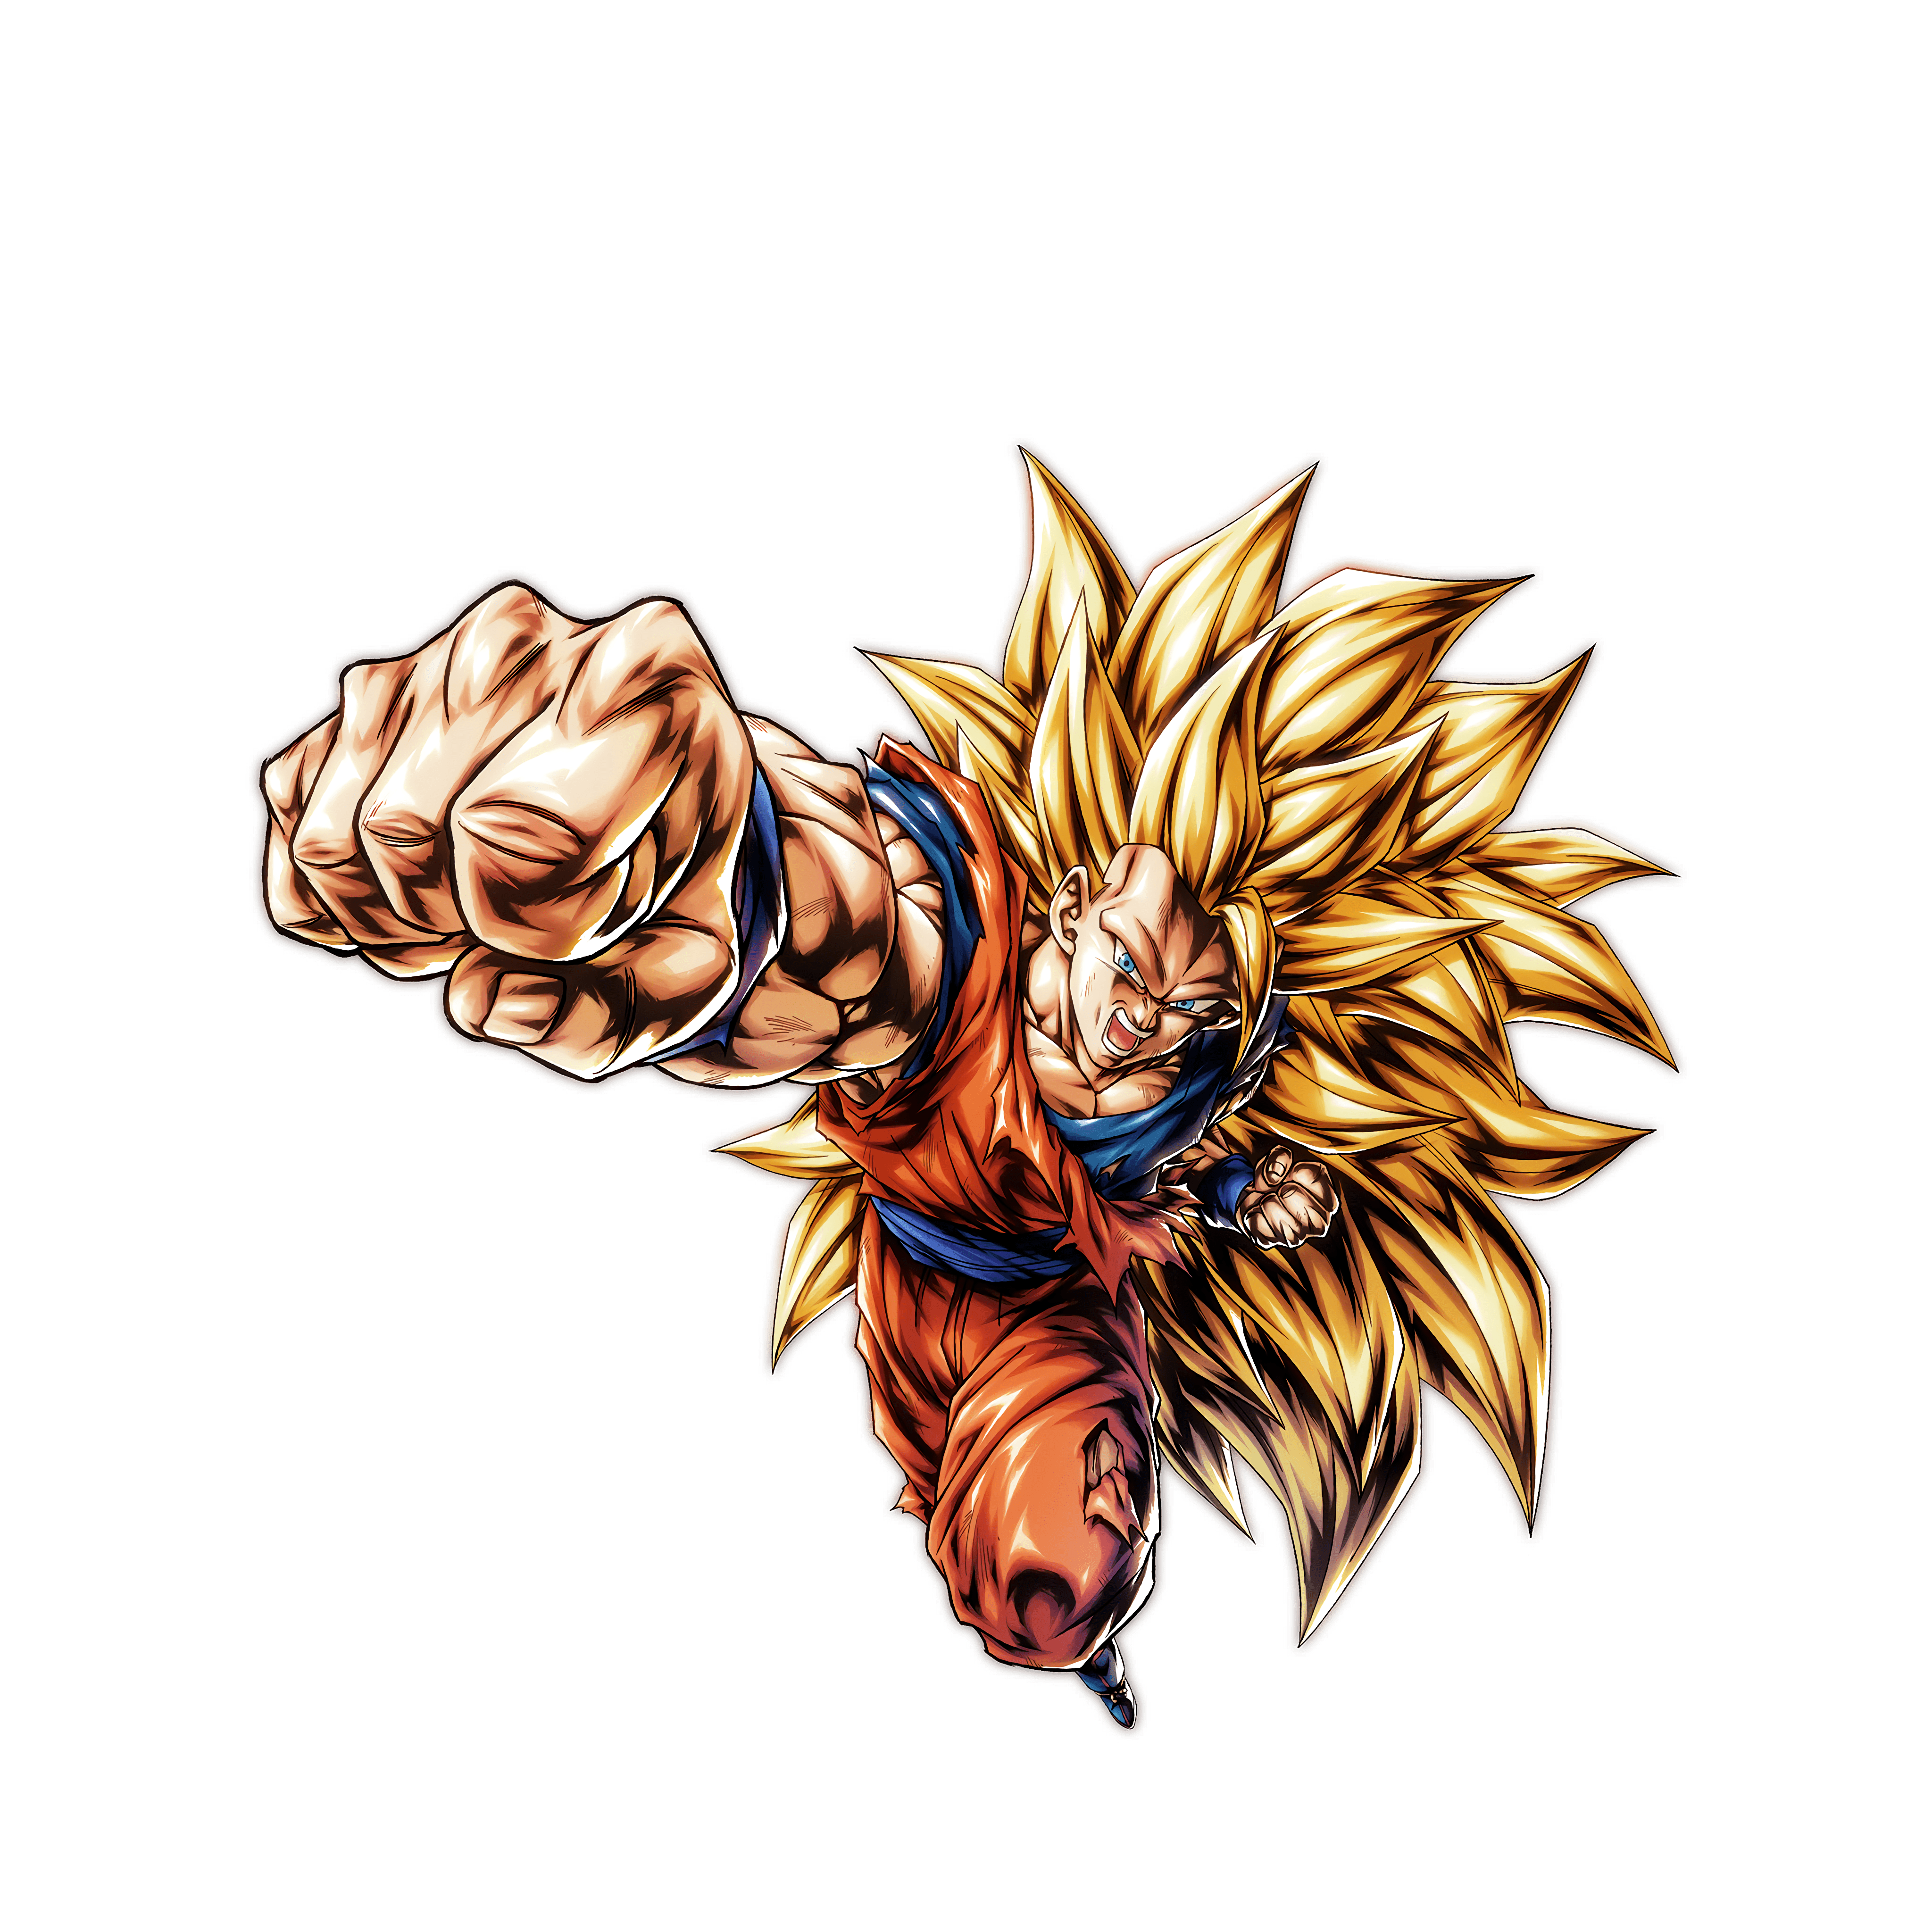 Goku Black render [DB Legends] by hoavonhu123 on DeviantArt